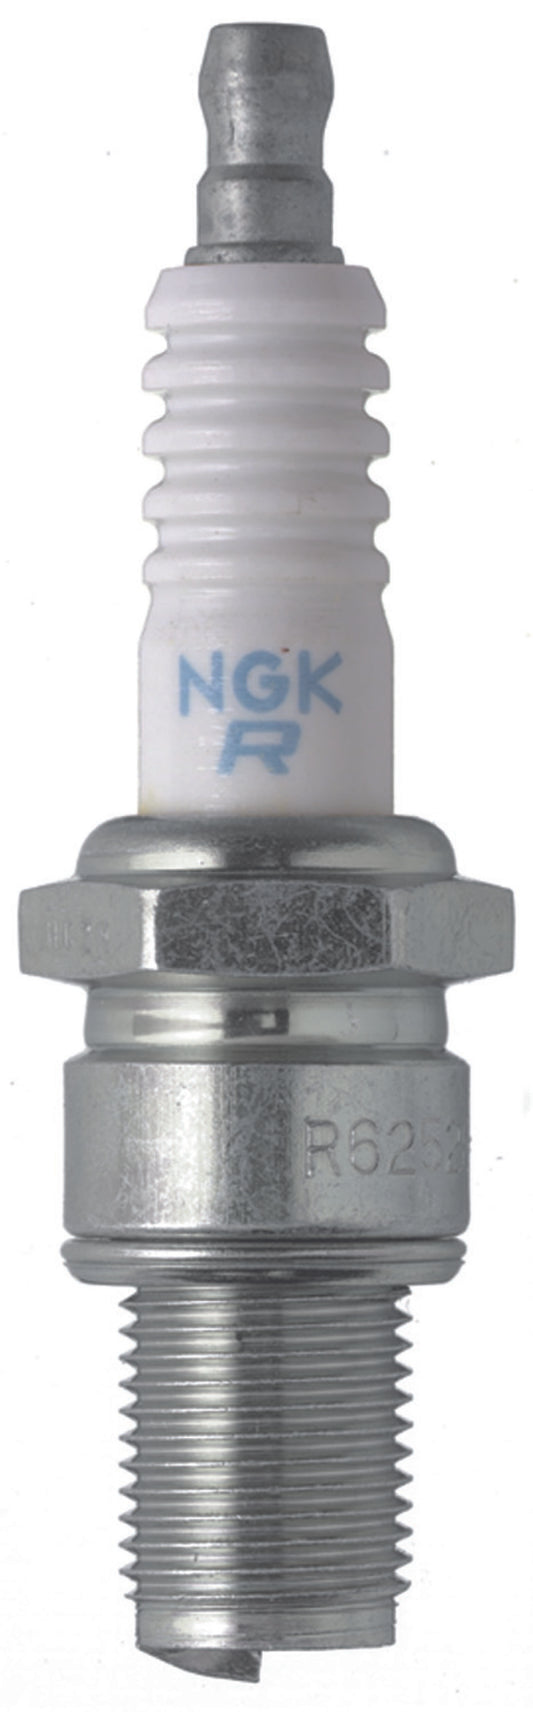 NGK Racing Spark Plug Box of 4 (R6918B-8)